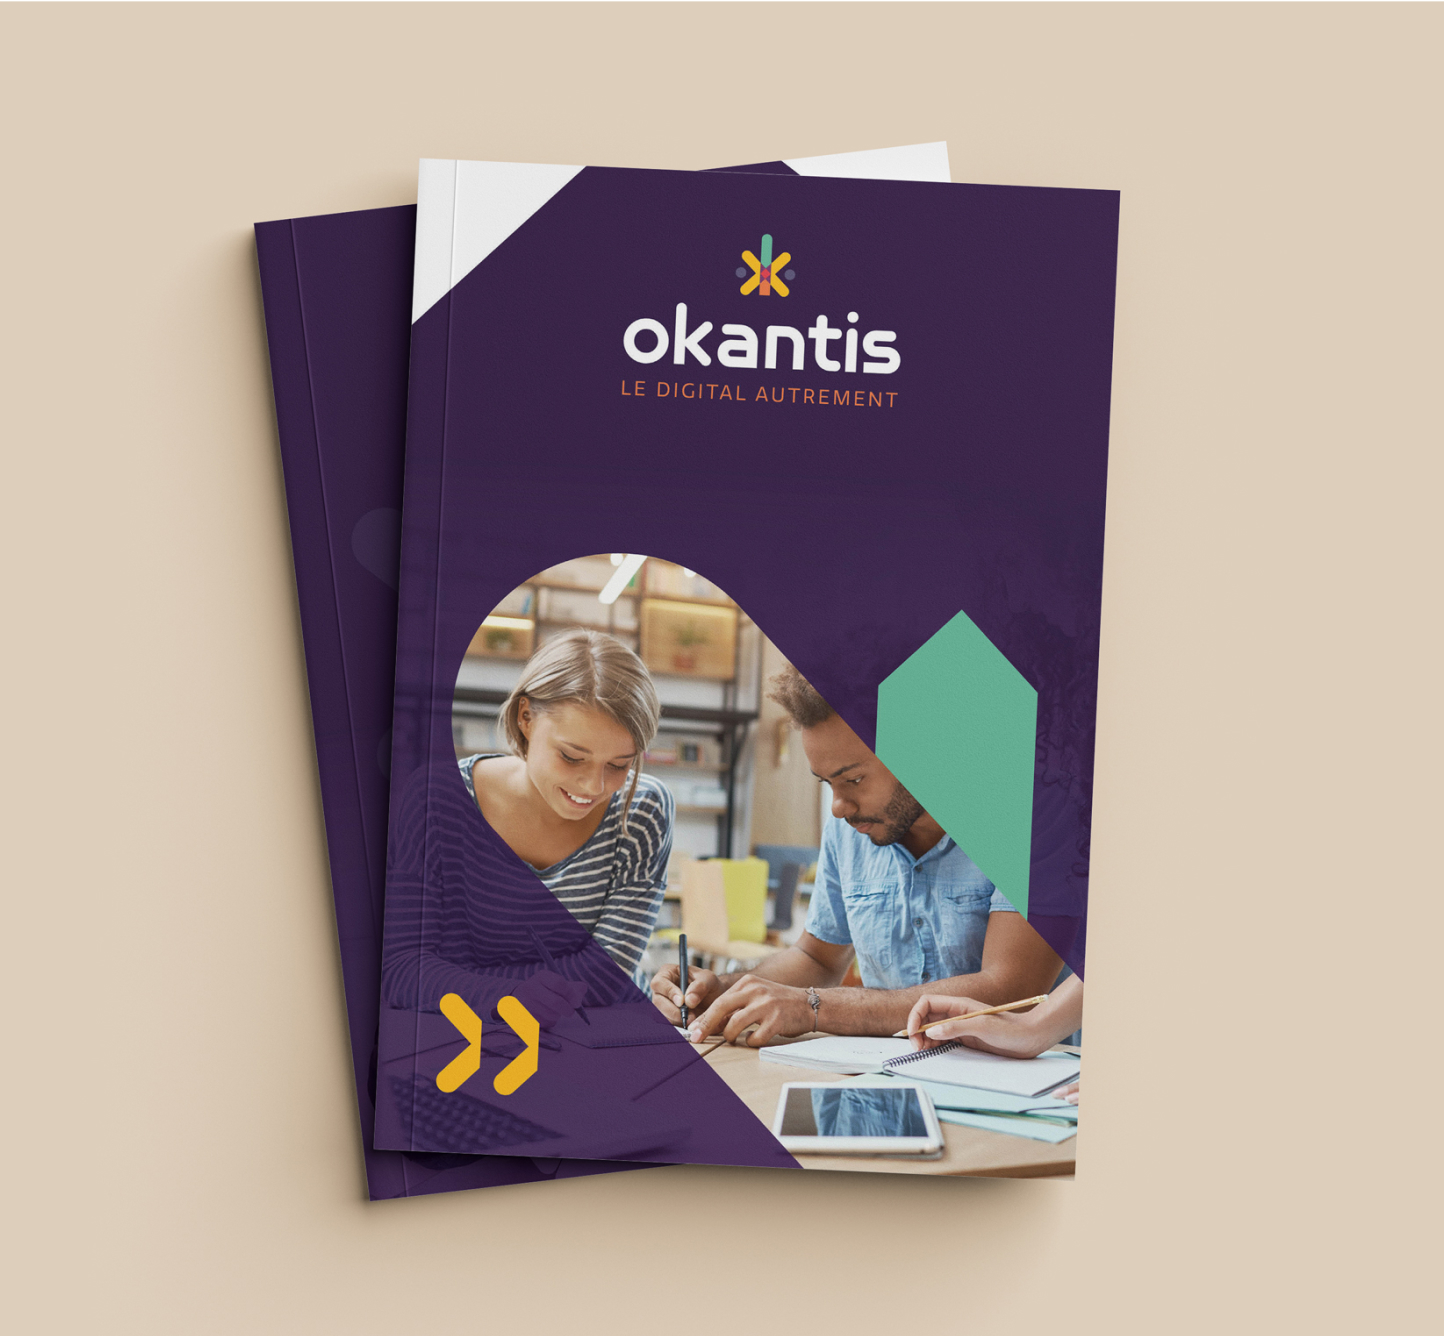 Agence Pixine : aperçu de la couverture de la plaquette commerciale réalisée pour Okantis